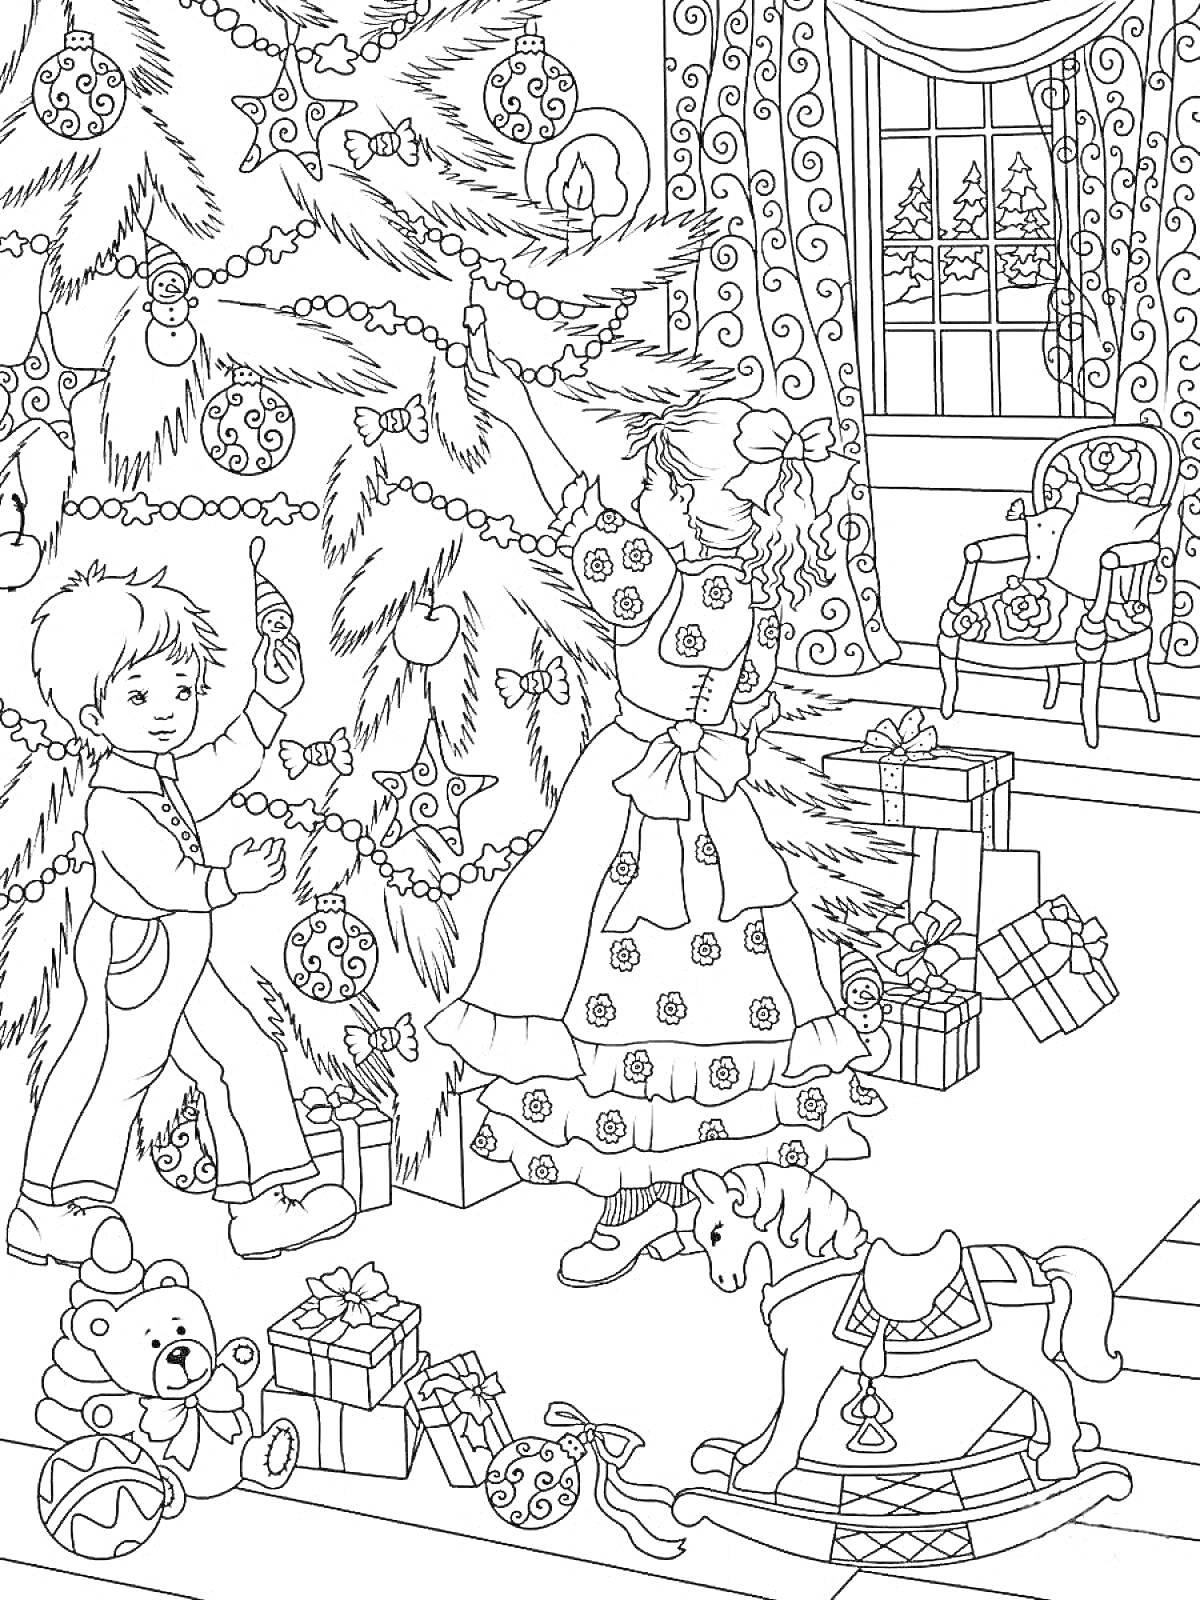 Раскраска Наряженная новогодняя елка с игрушками, дети в костюмах, украшения, подарки, окно с зимним пейзажем, кресло